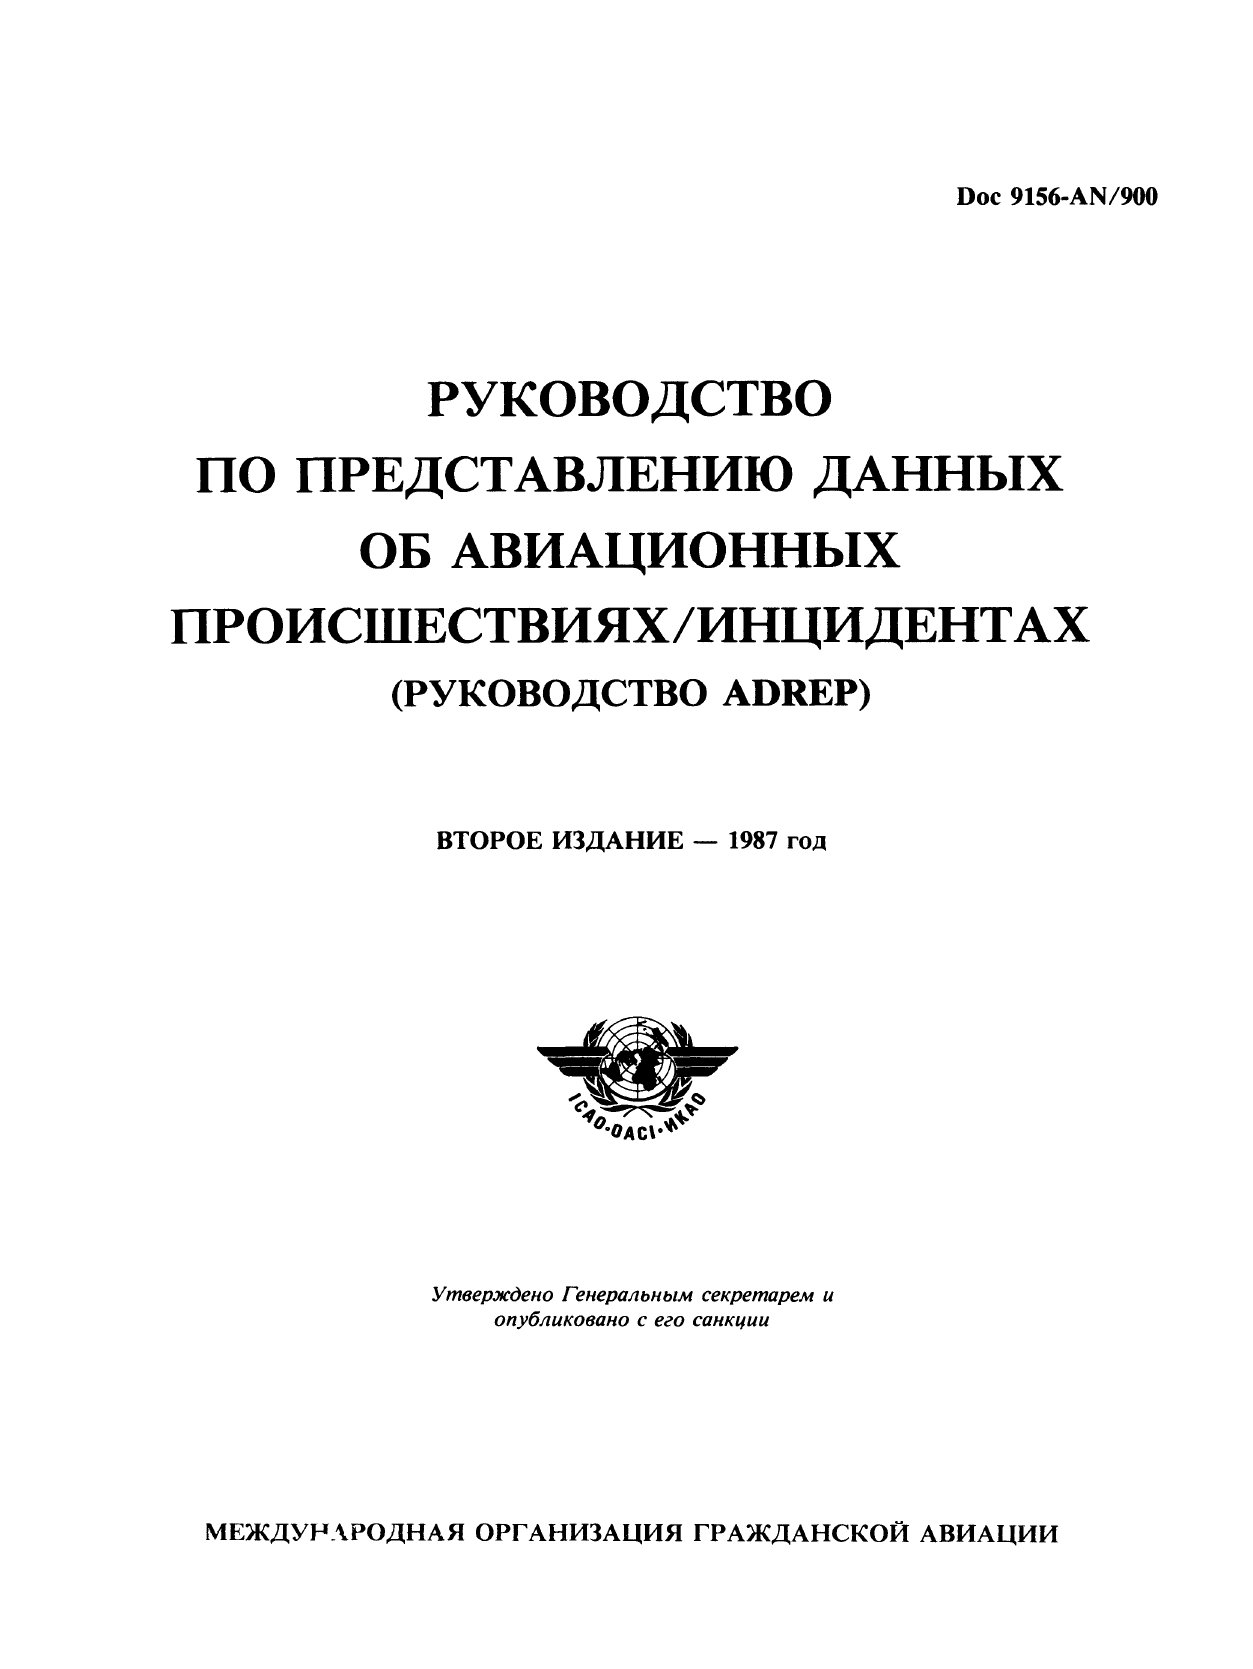 Обложка книги ICAO Doc 9156 РУКОВОДСТВО ПО ПРЕДСТАВЛЕНИЮ ДАННЫХ ОБ АВИАЦИОННЫХ ПРОИСШЕСТВИЯХ/ИНЦИДЕНТАХ (РУКОВОДСТВО ADREP) (ИКАО)